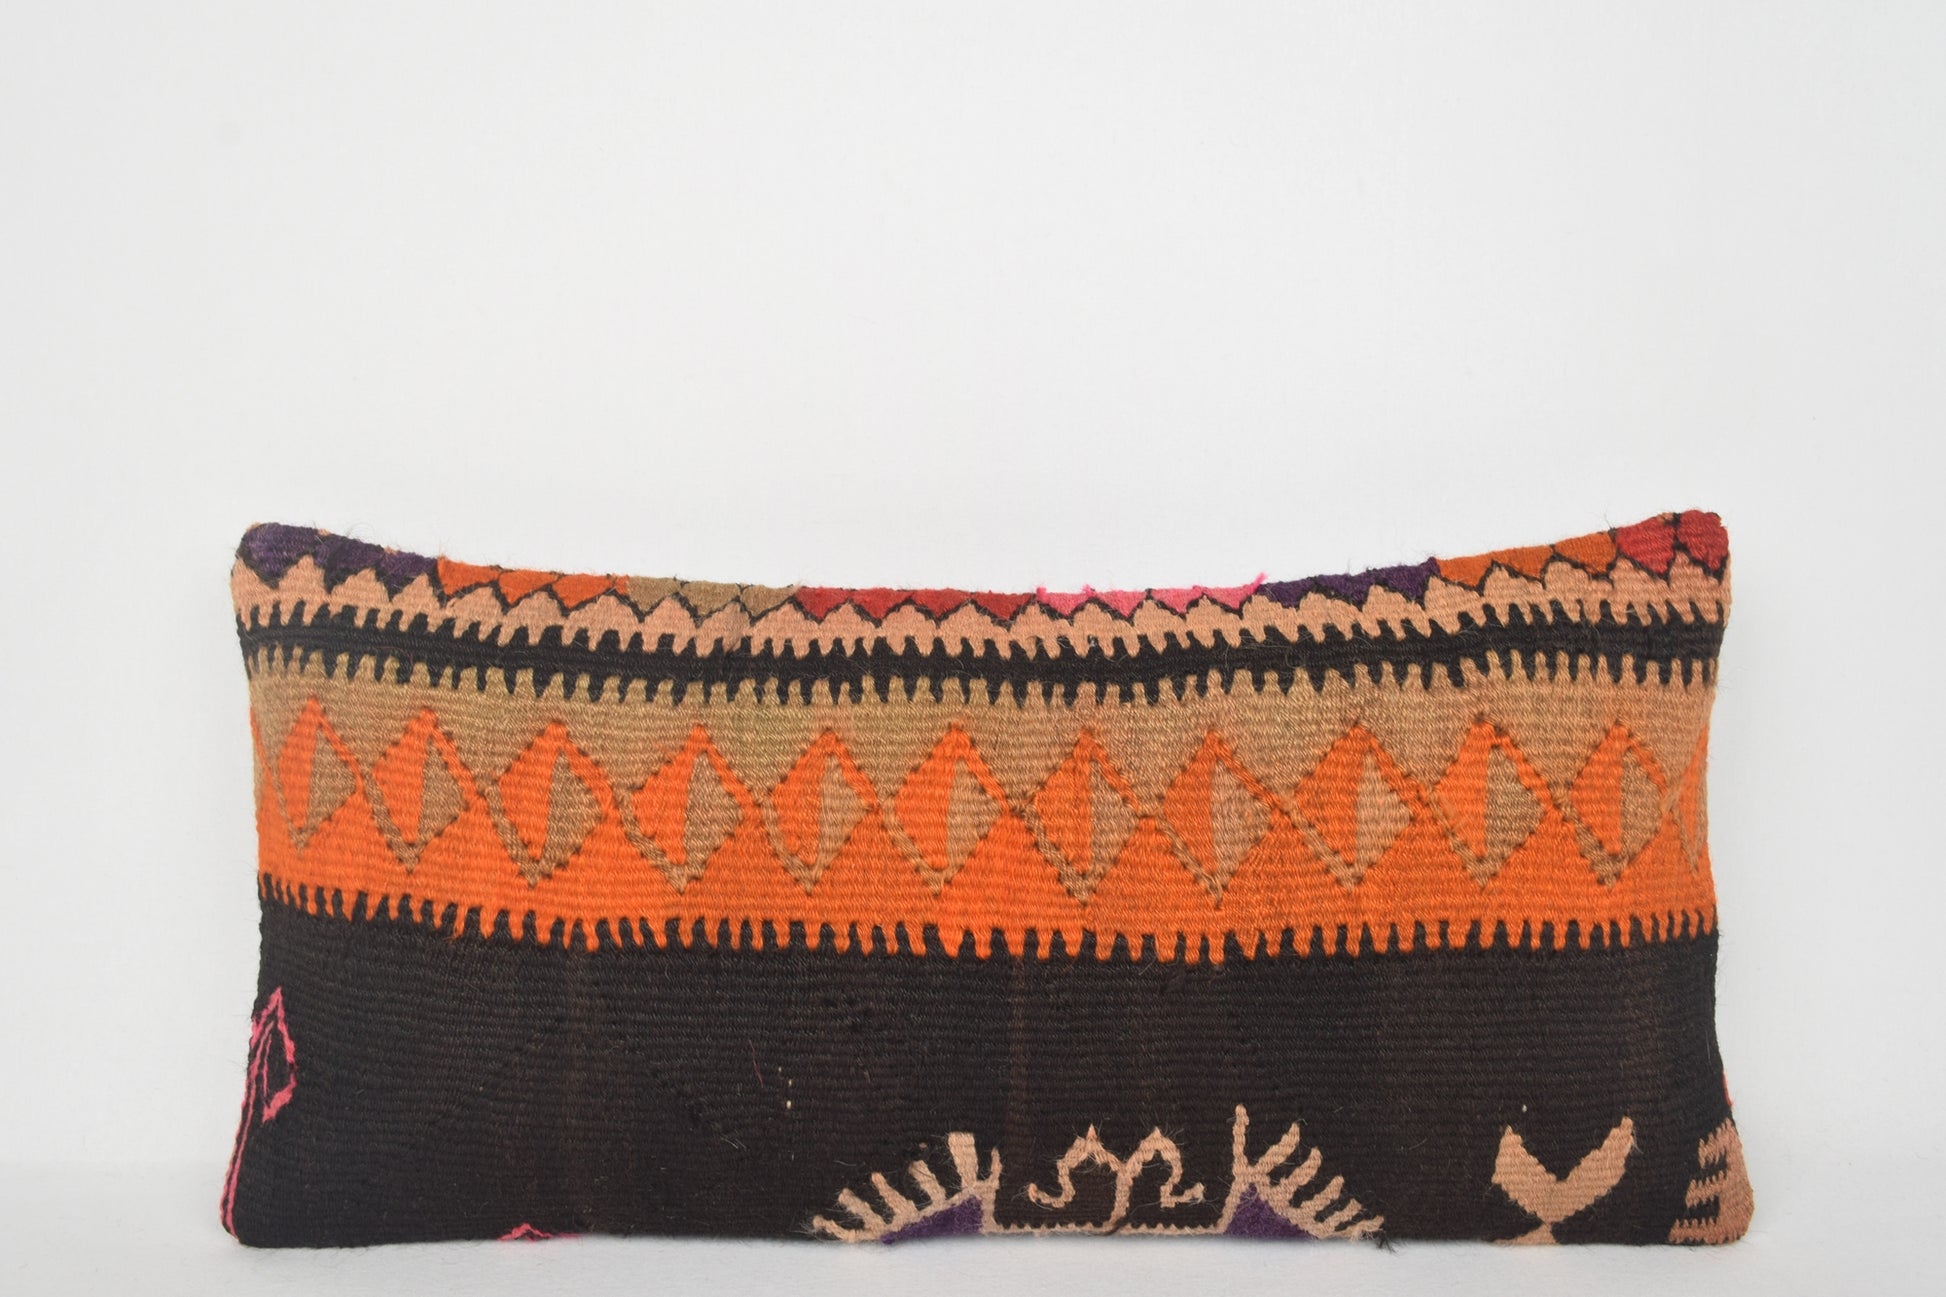 Tribal Outdoor Pillows, Persian Kilim Rug Pillows Lumbar F00211 12x24 " - 30x60 cm.